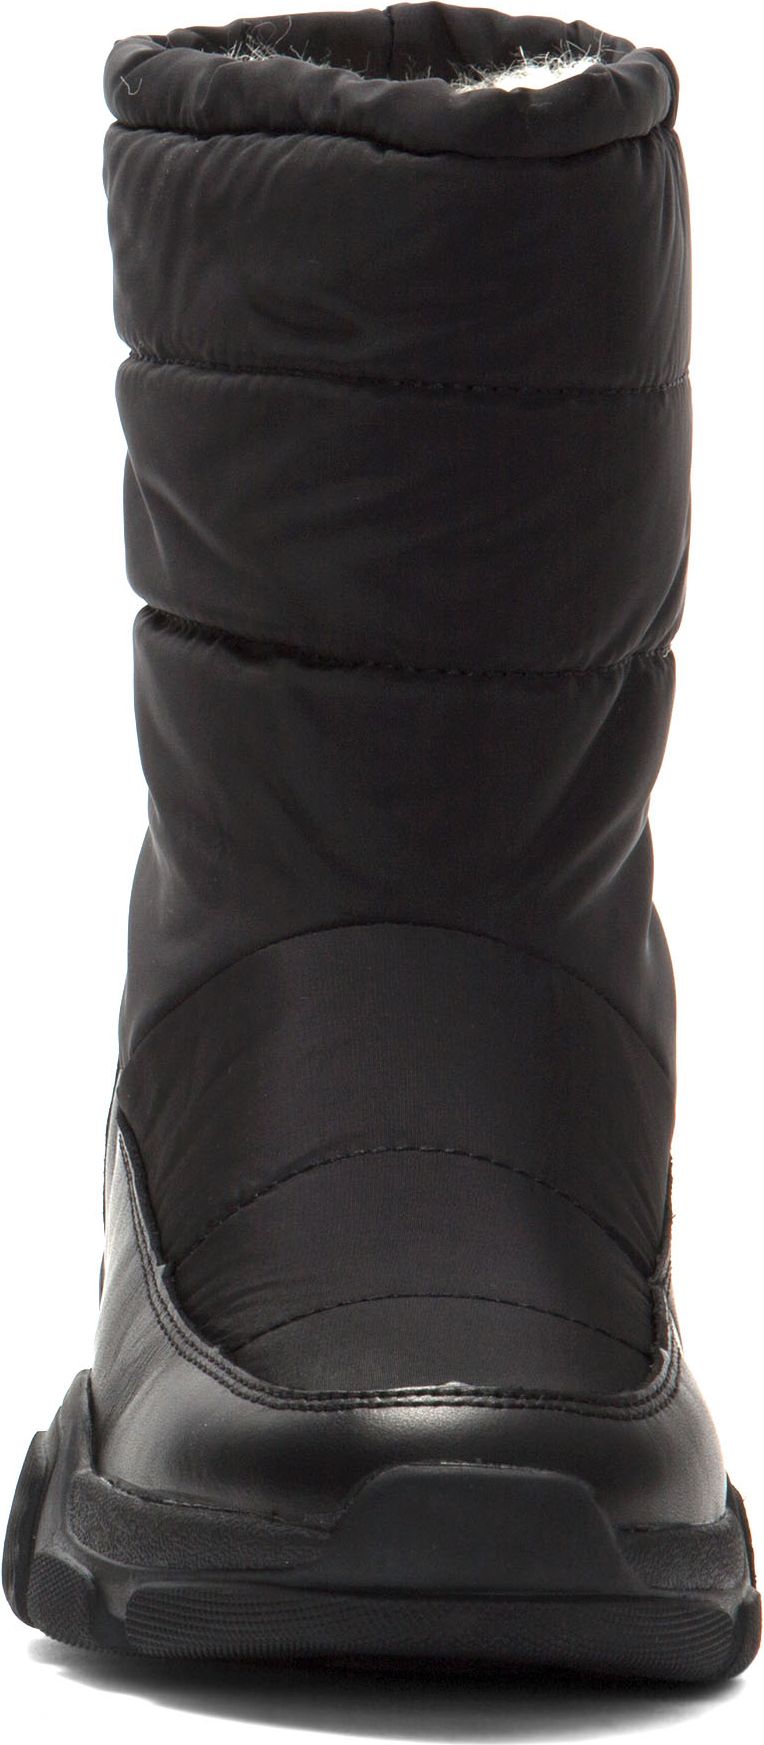 Religious Comfort Boots Frozen Vanilla Black